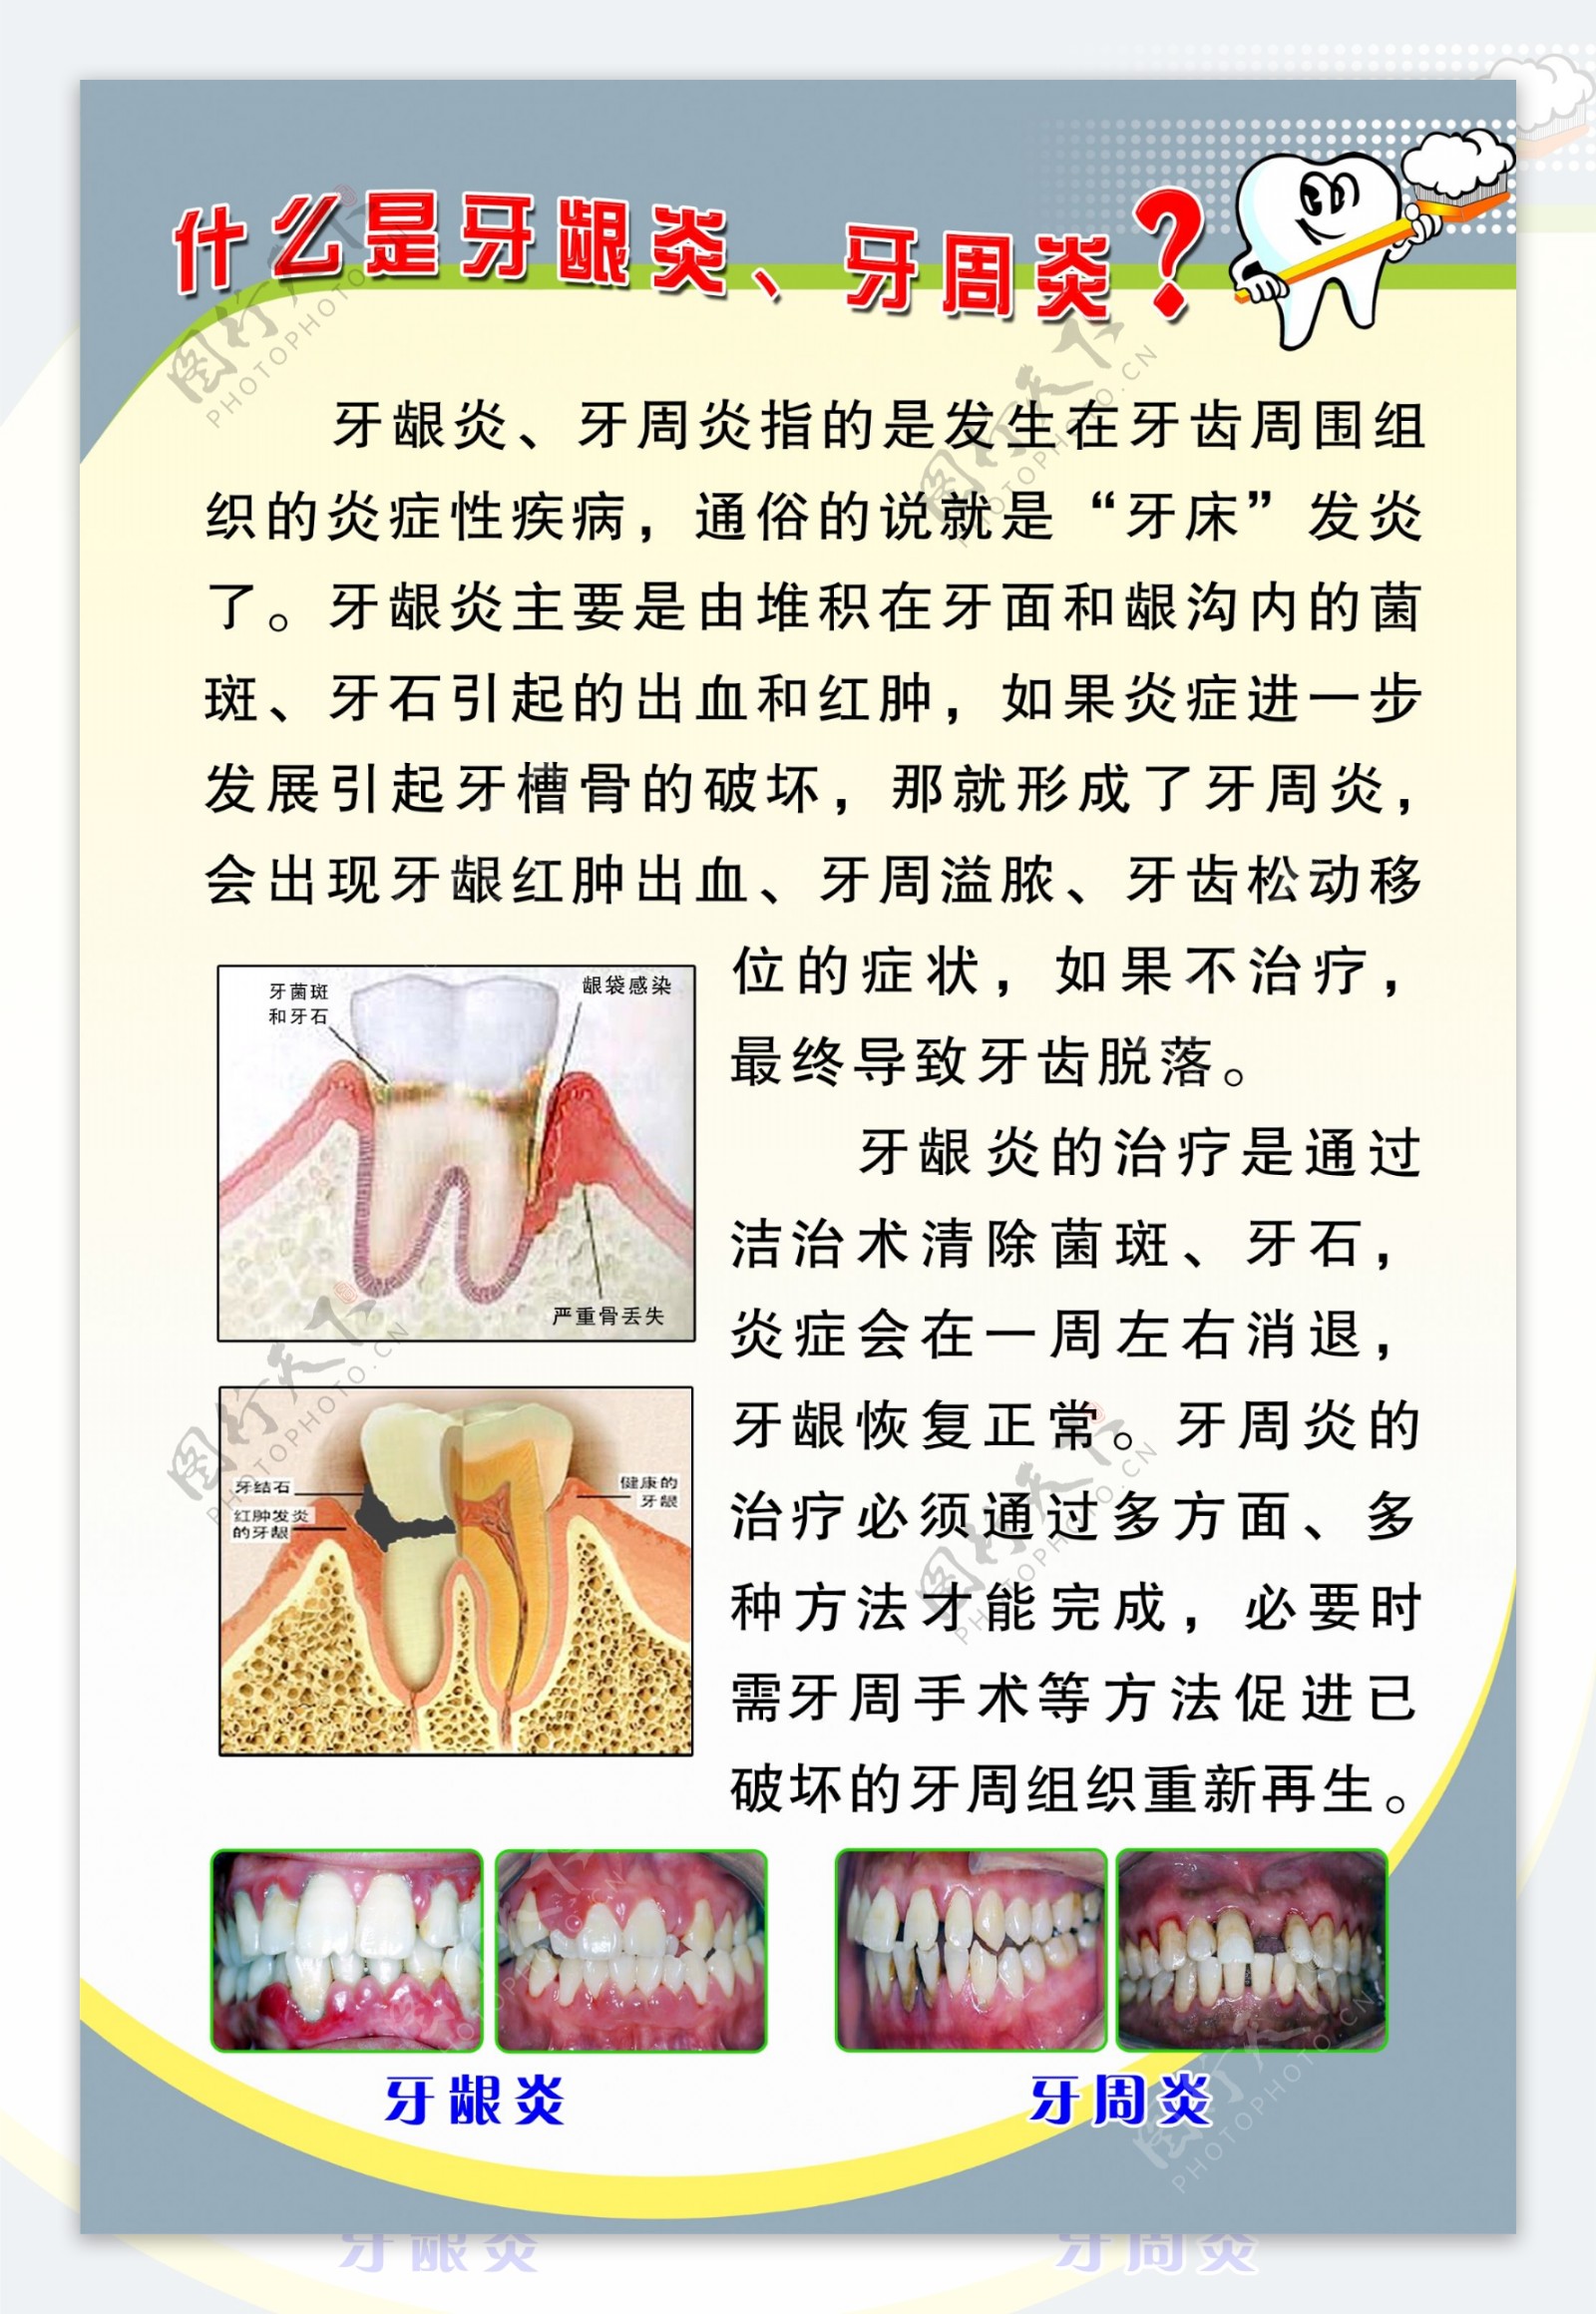 牙龈炎症状和图片以及边缘性牙龈炎的治疗方法都在这里 - 口腔保健 - 开立特口腔